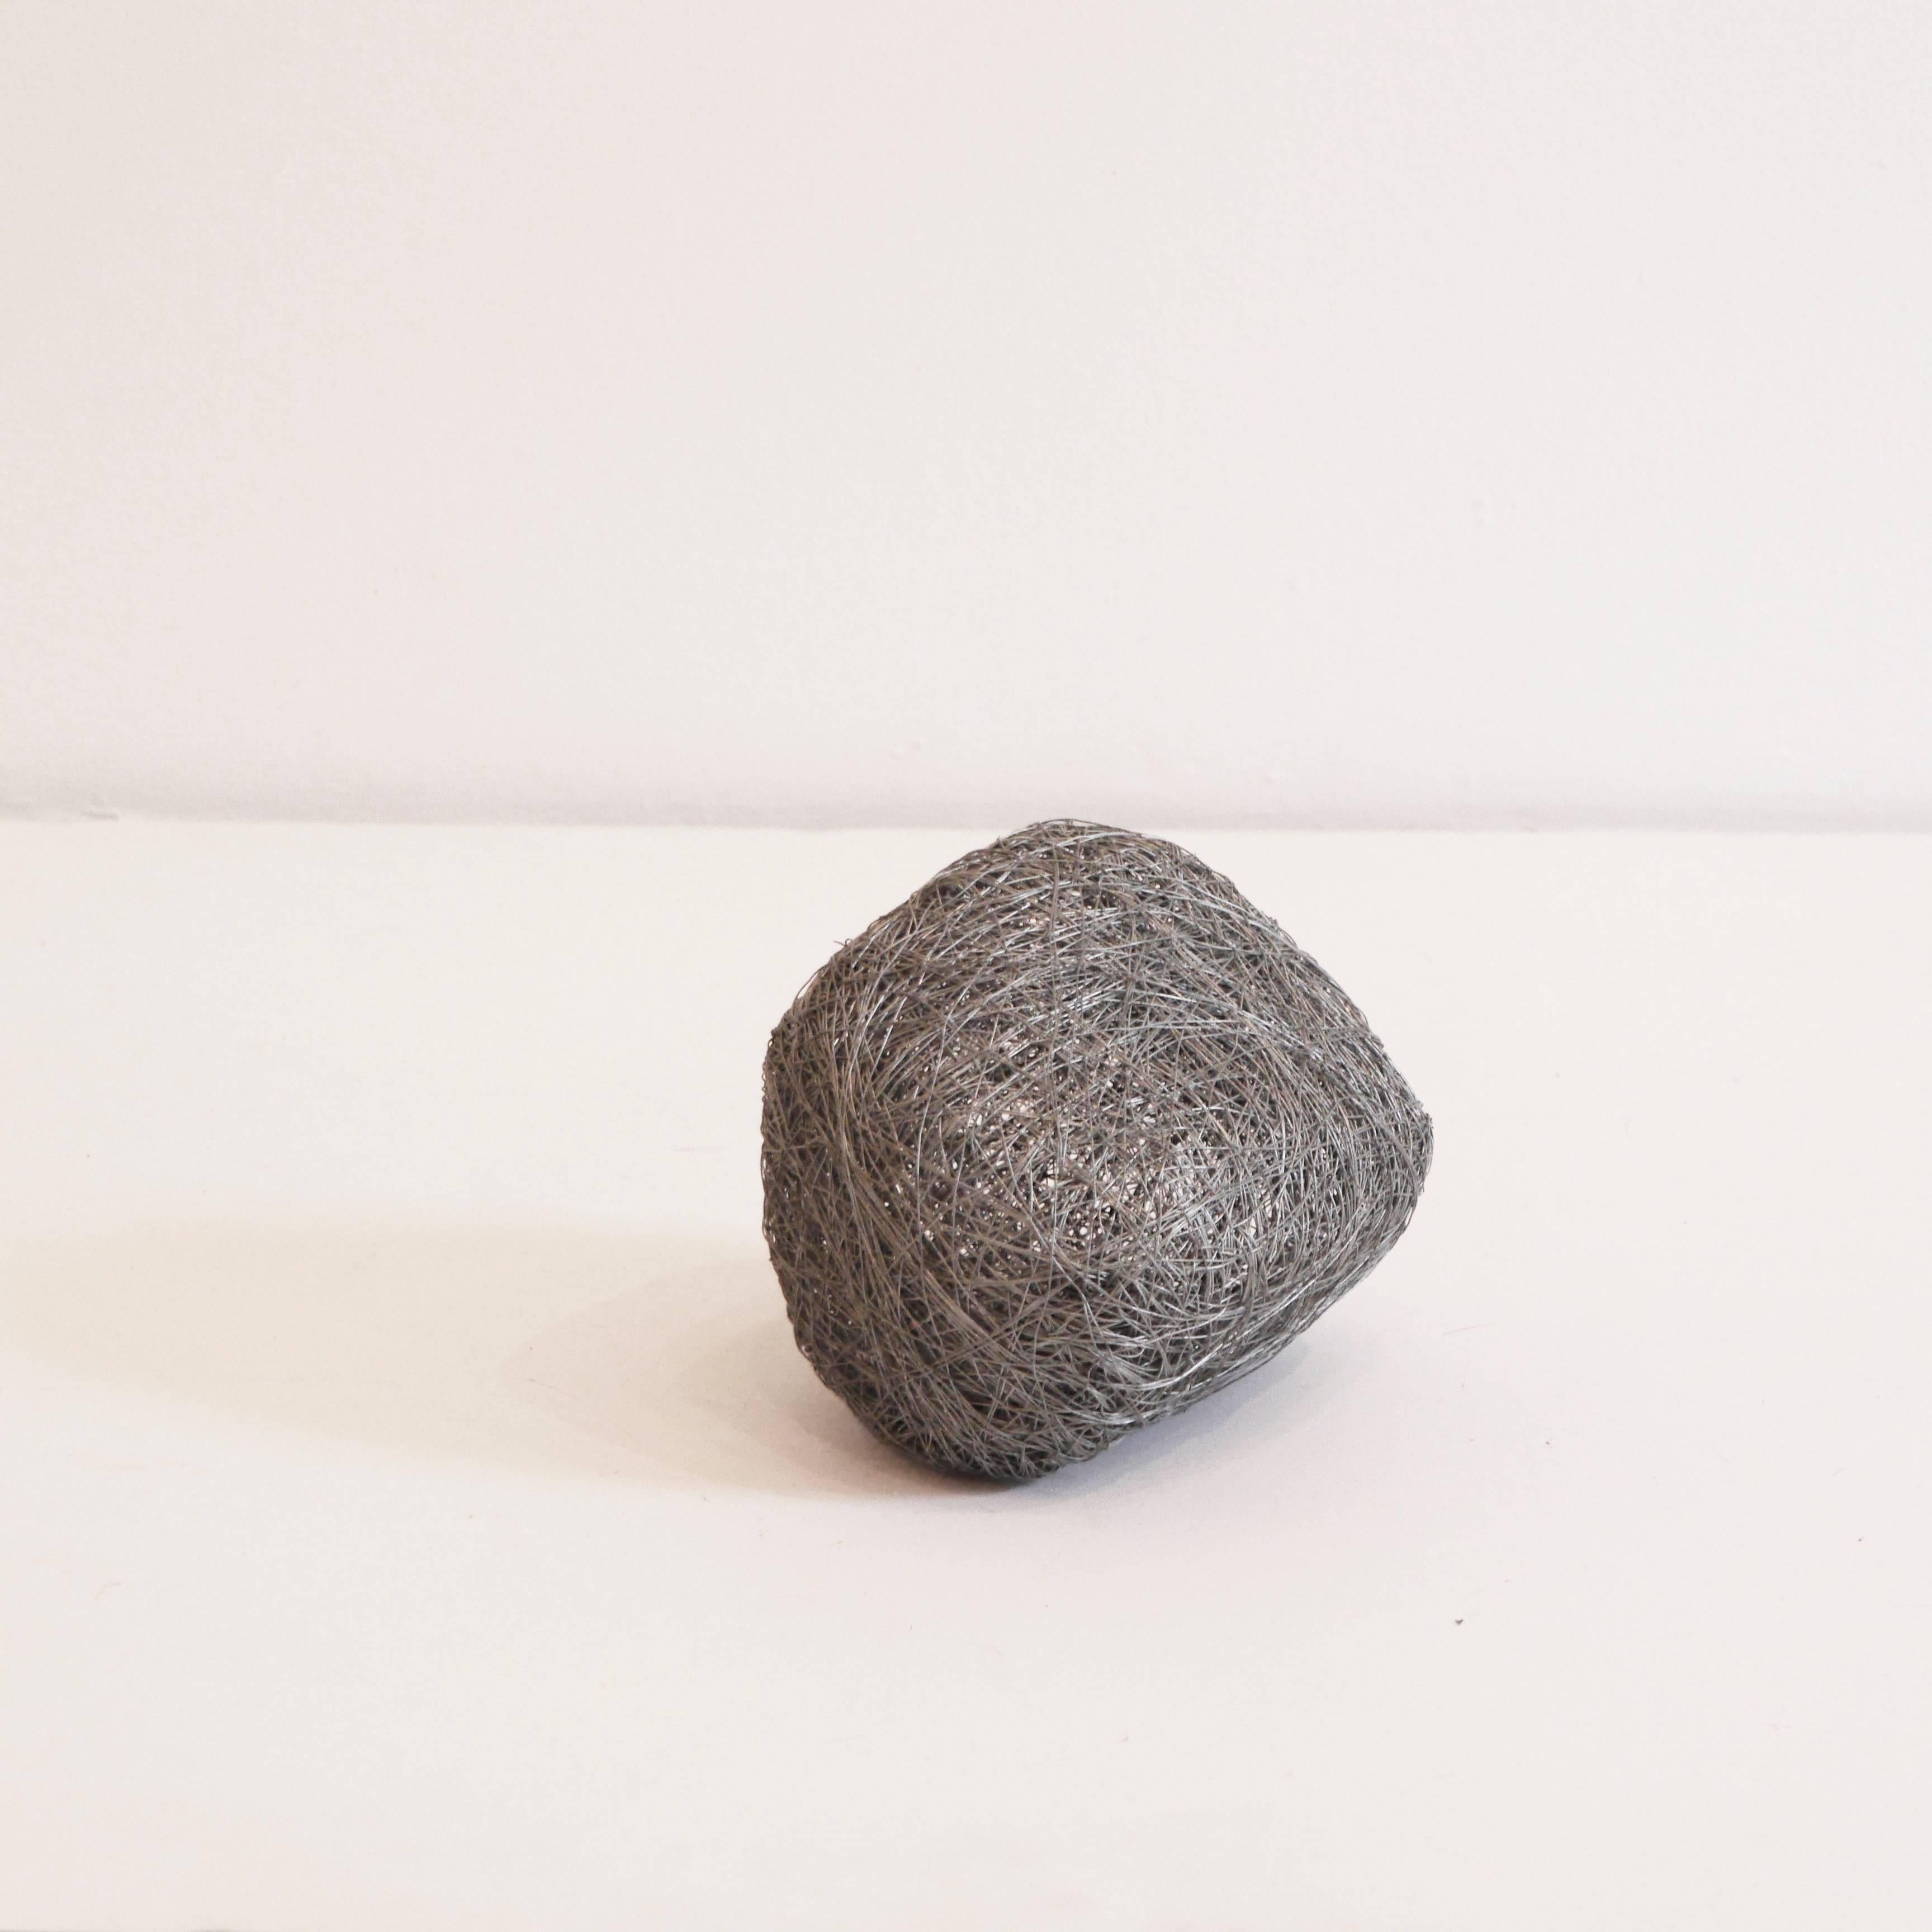 Angelica Bergamini Still-Life Sculpture - Sasso (Stone-Small)